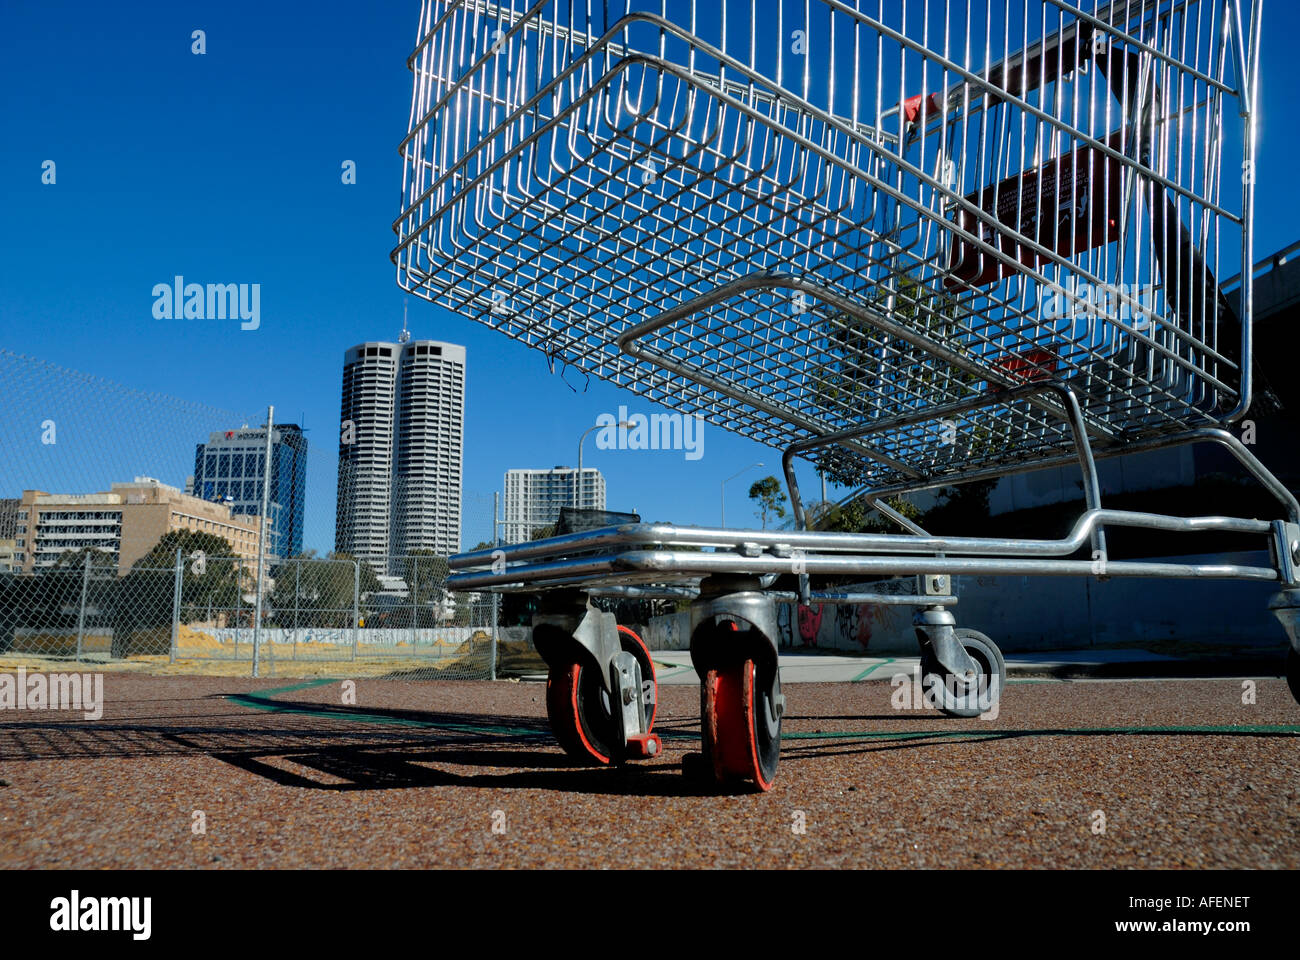 A livello del suolo in prossimità del carrello della spesa, città visibile in background. Perth, Western Australia Foto Stock